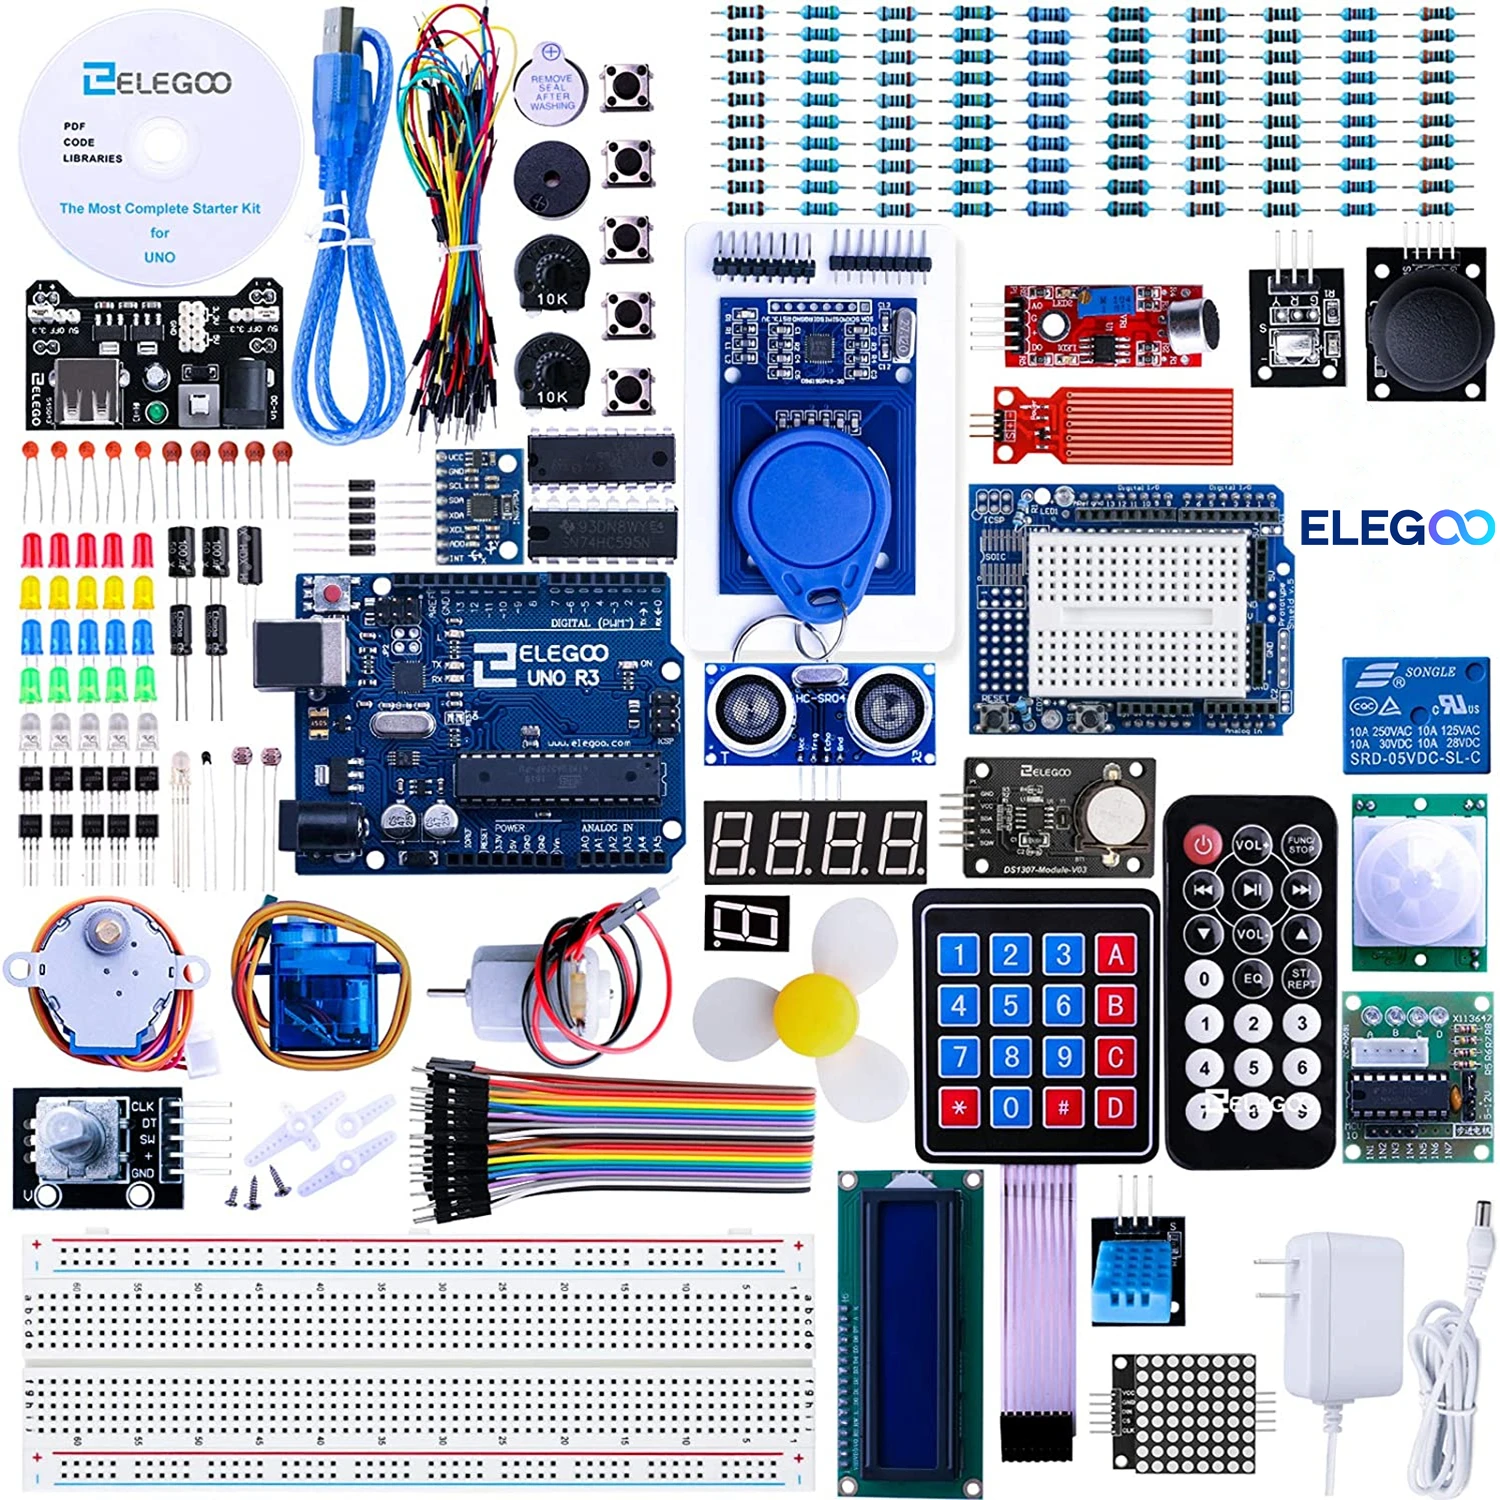 ELEGOO-Kit de iniciación UNO R3 para proyecto, Kit electrónico de bricolaje con Tutorial Compatible con Arduino IDE (63 artículos)